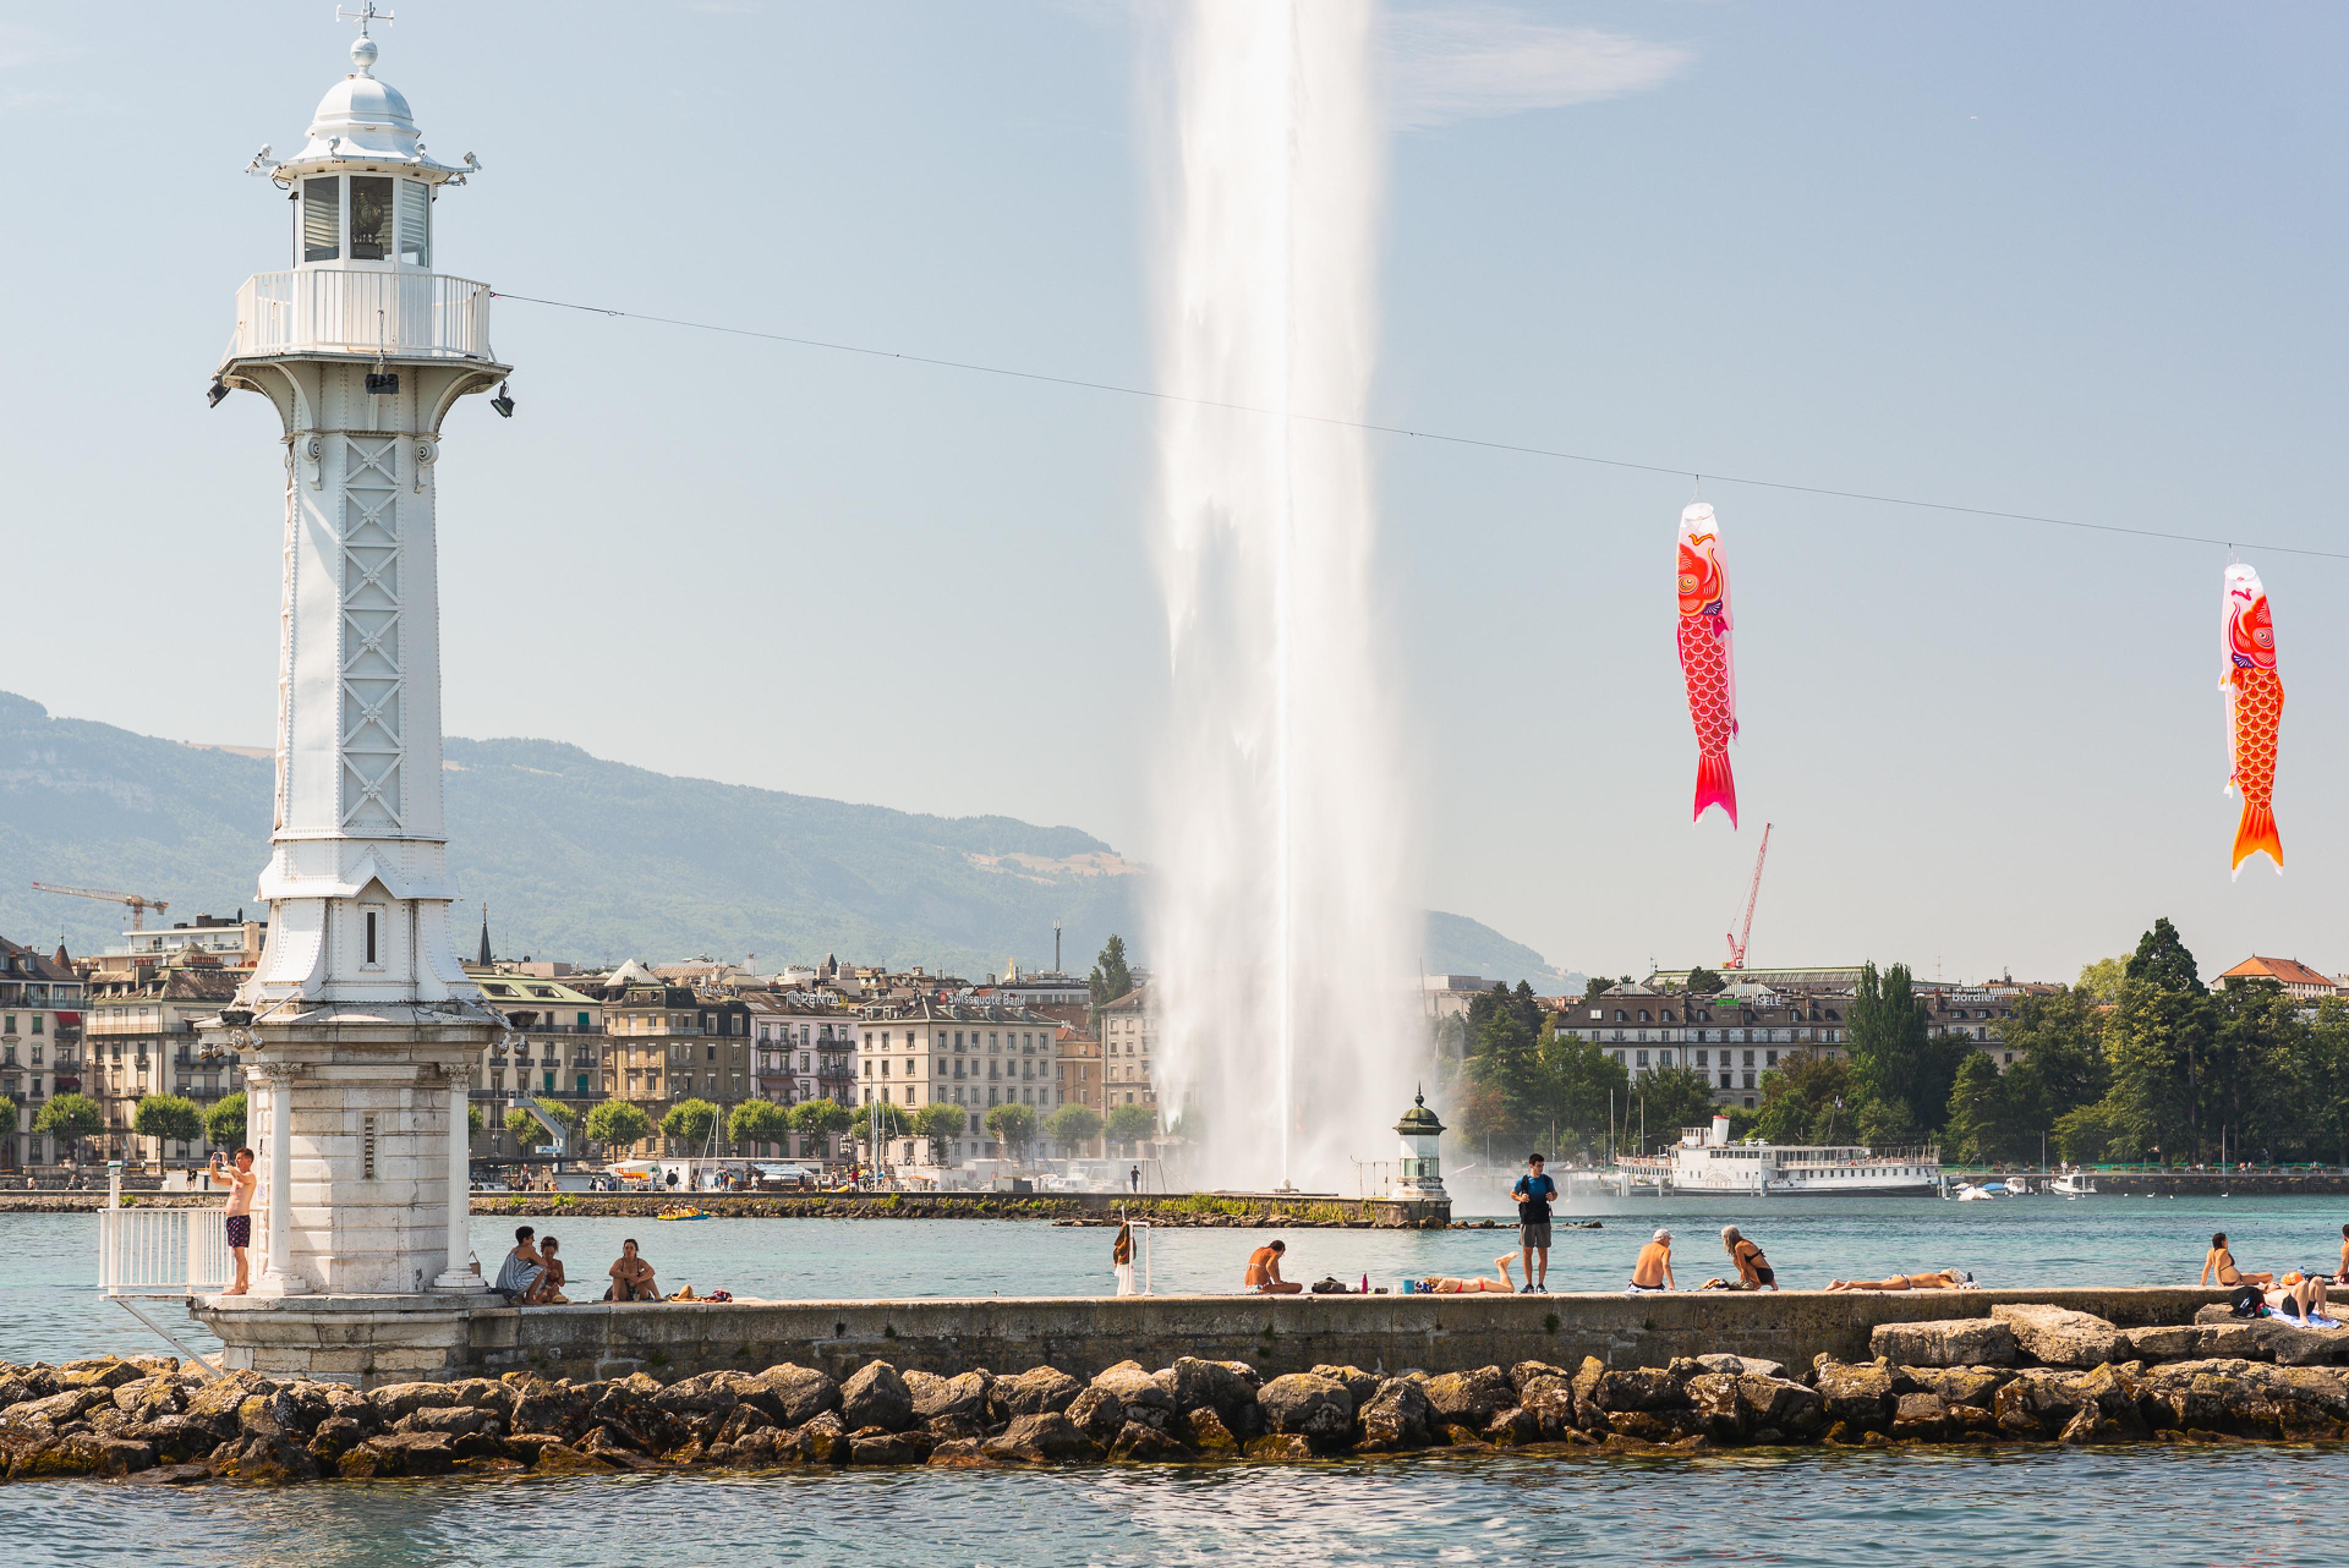 Geneva's fountain